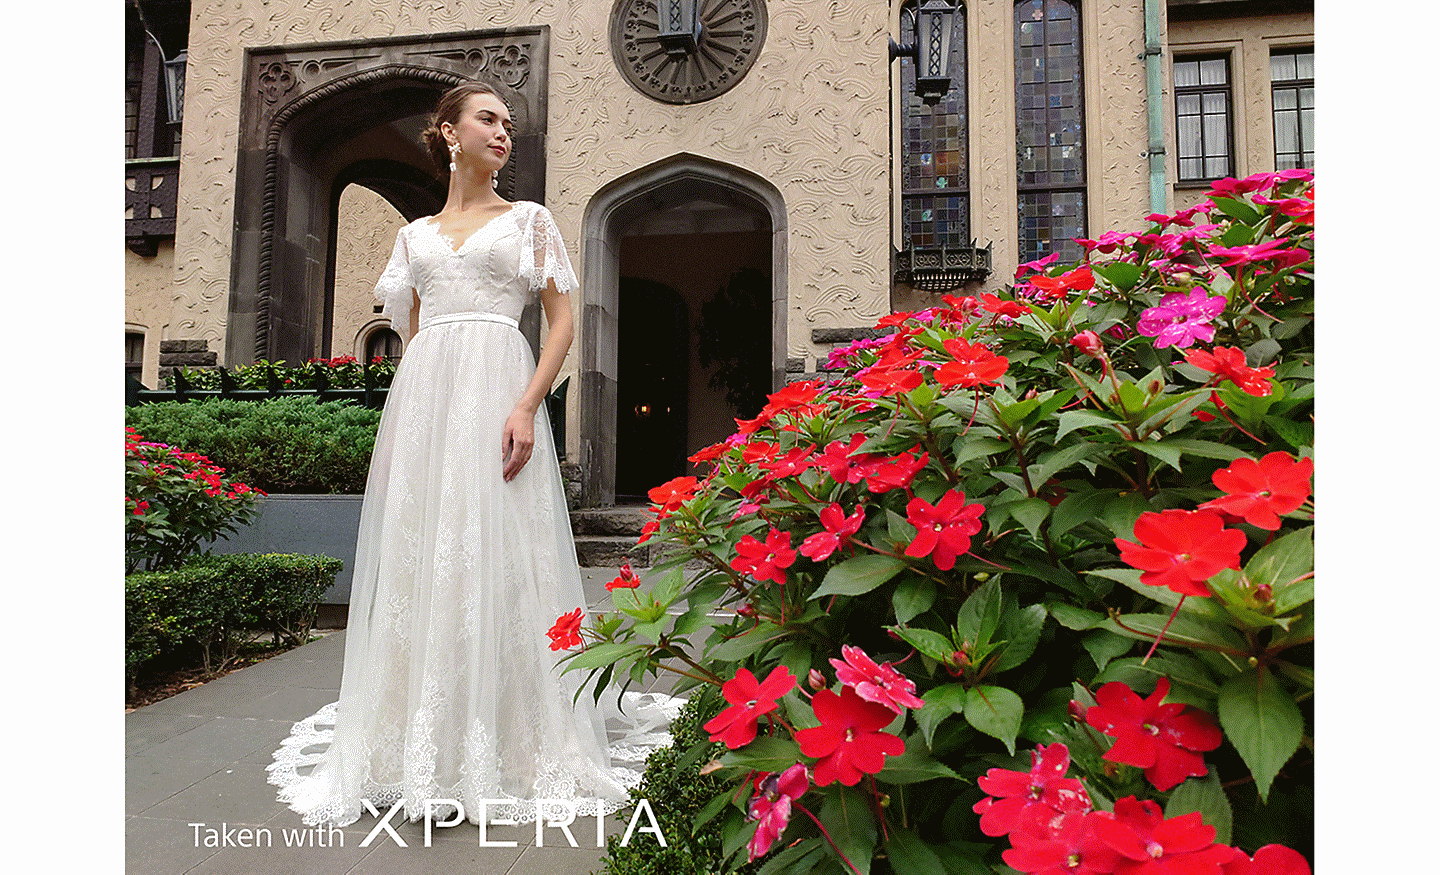 一名新娘在建築物前擺姿勢拍照，前景有紅色花朵。寫著「使用 XPERIA 拍攝」的文字。